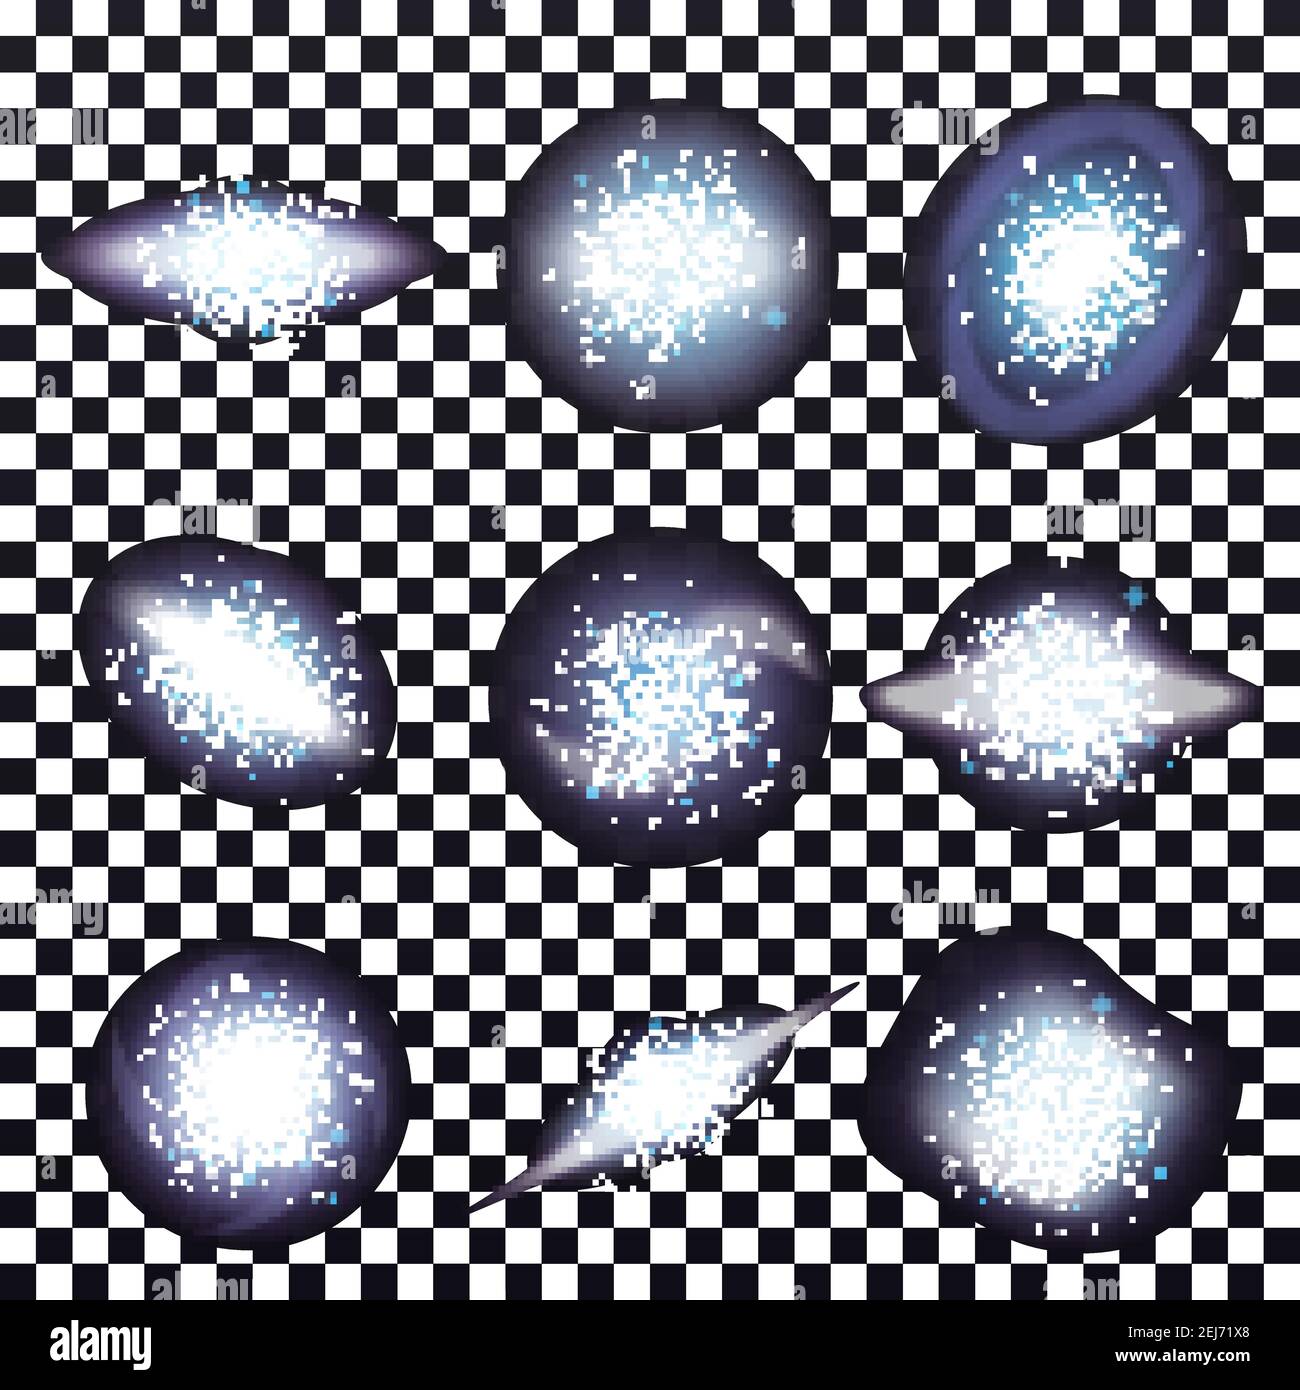 Galaxy spiral realistic set con gruppi geometricamente sagomati di stelle con evidenziazioni speculari dell'universo su illustri vettoriali di sfondo trasparente Illustrazione Vettoriale